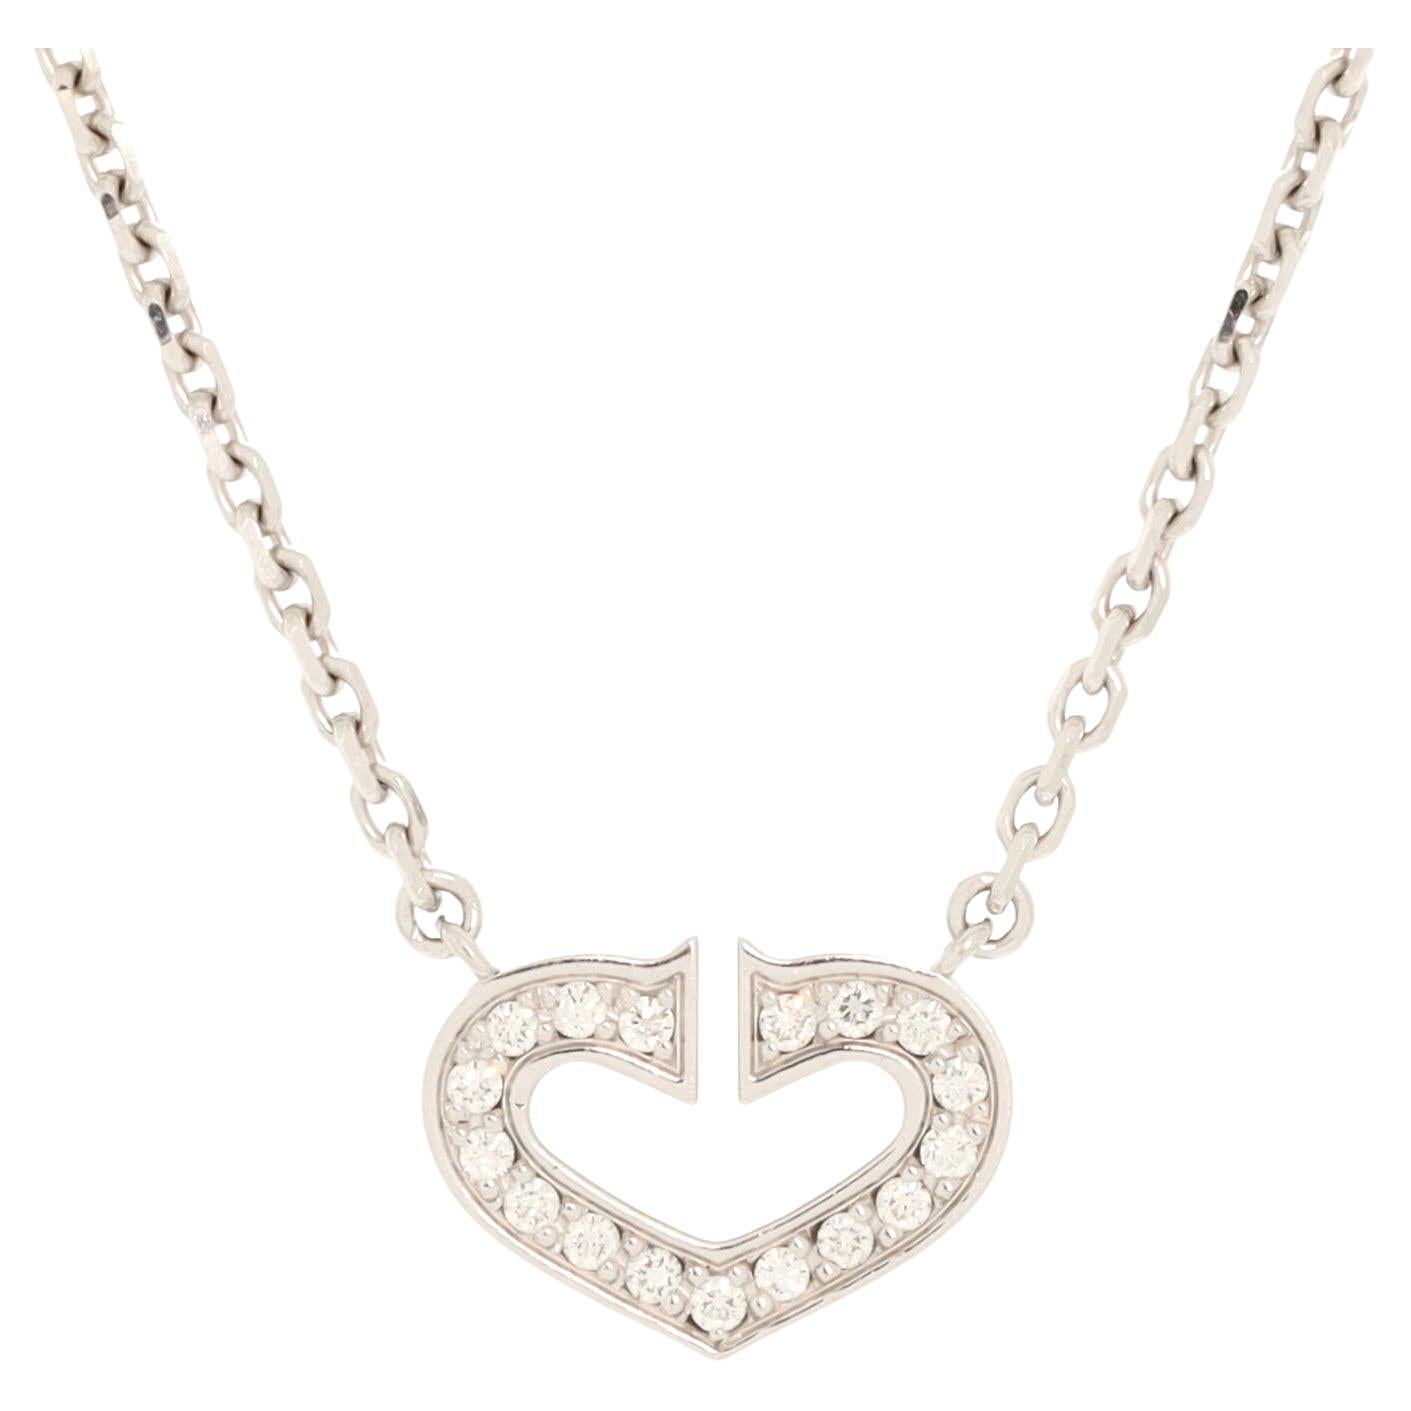 Cartier C Heart de Cartier Pendant Necklace 18K White Gold with Pave Diamonds